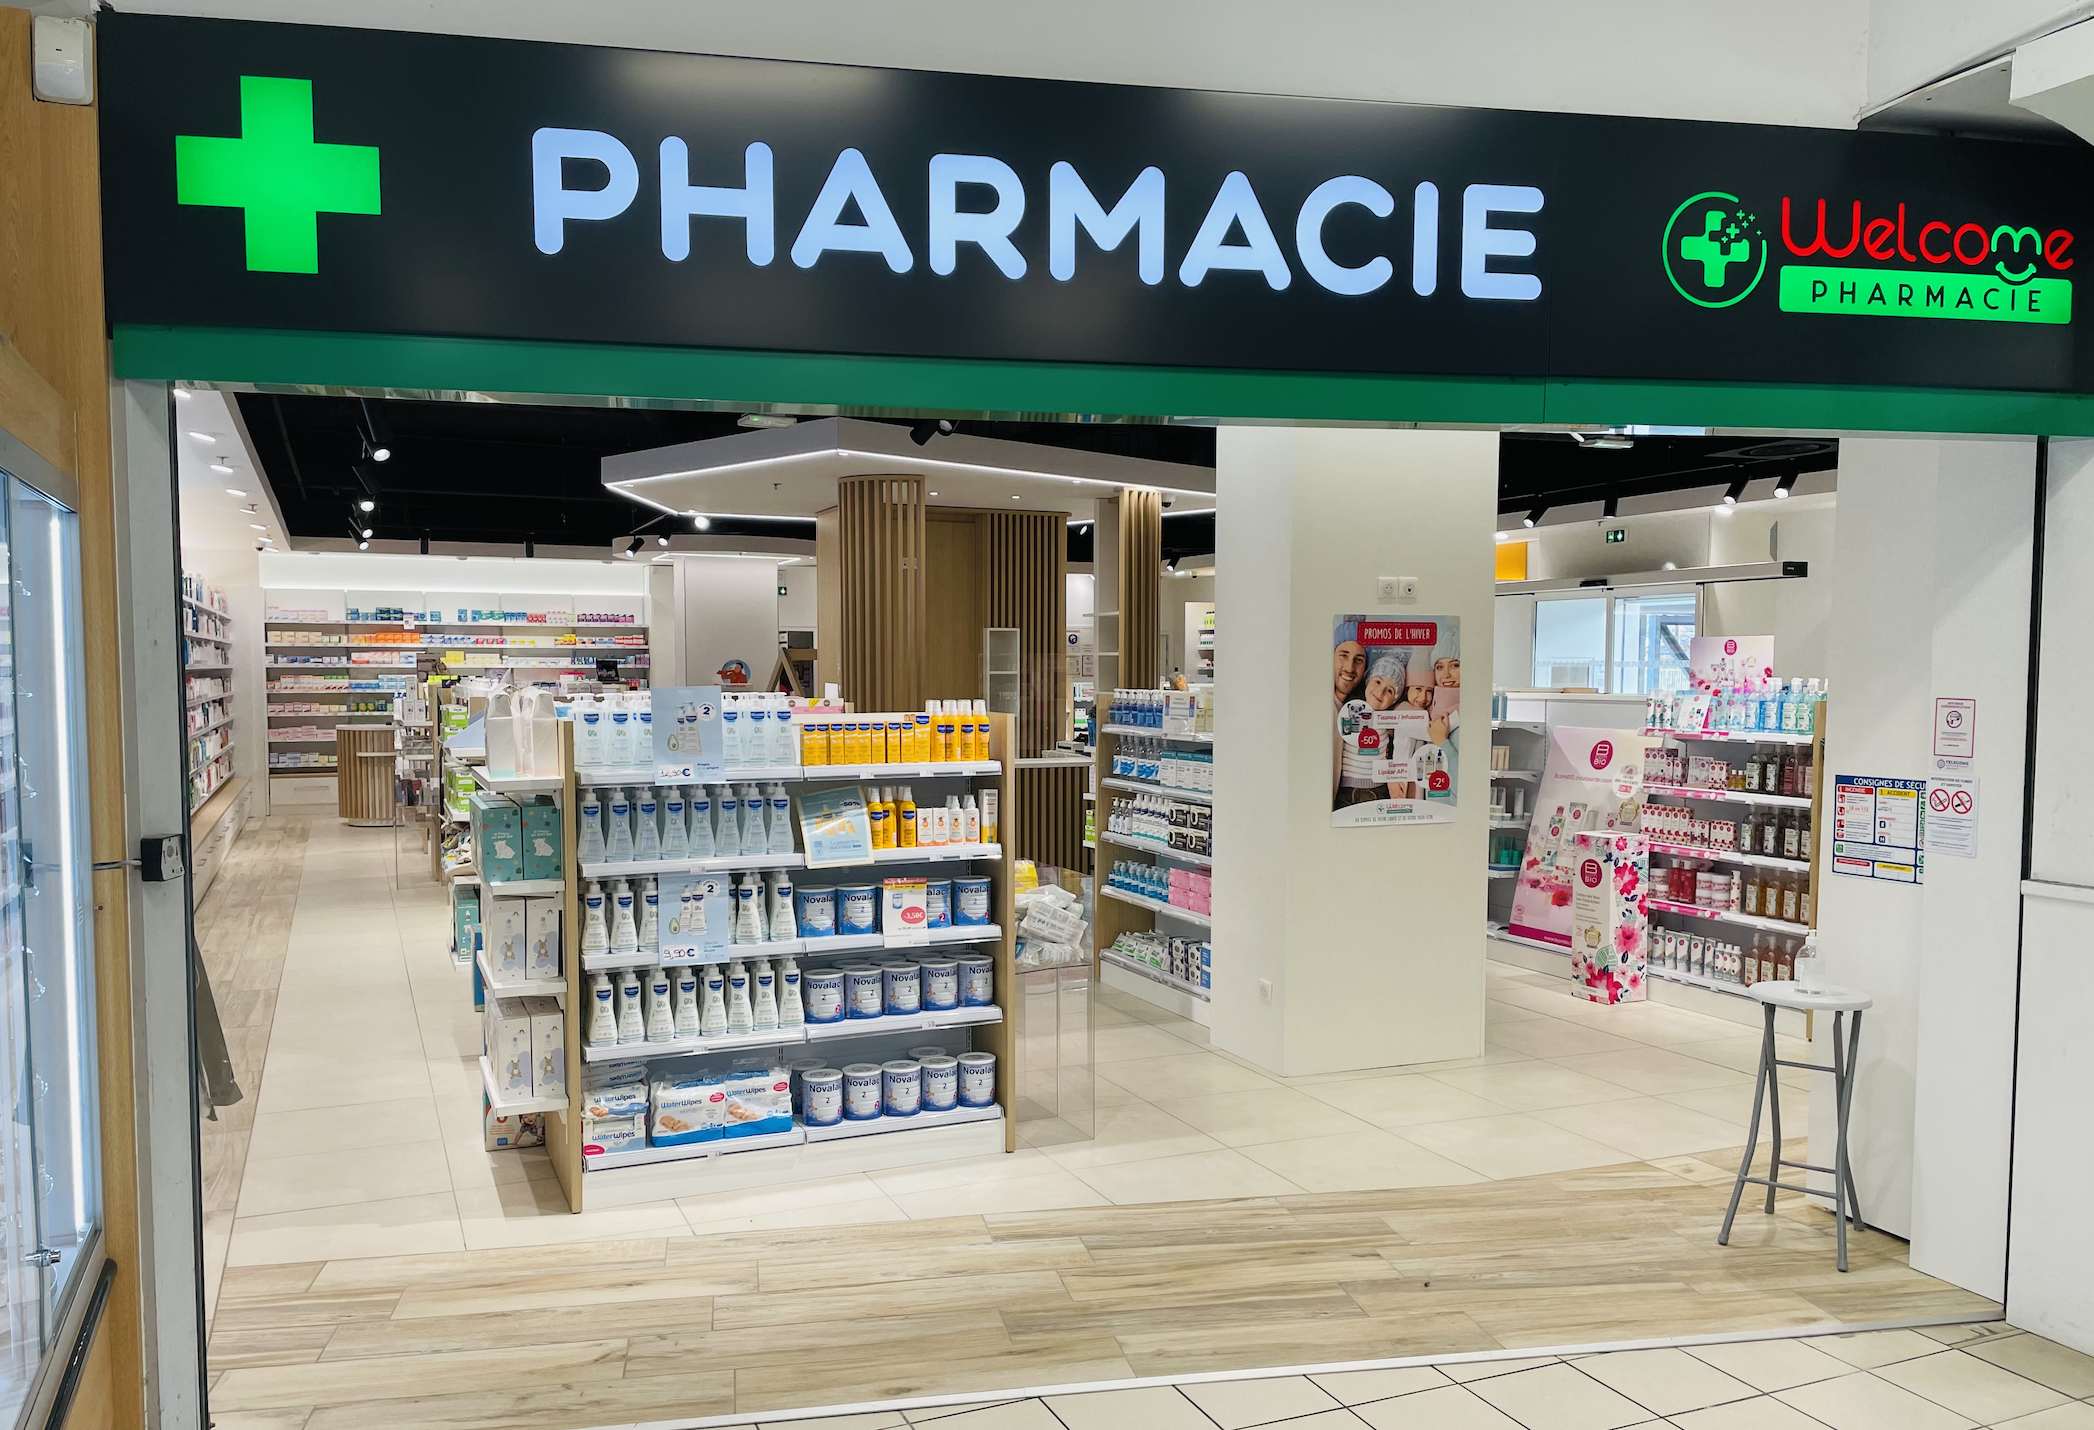 Pharmacie Pharmavenir - Welcome Pharmacie